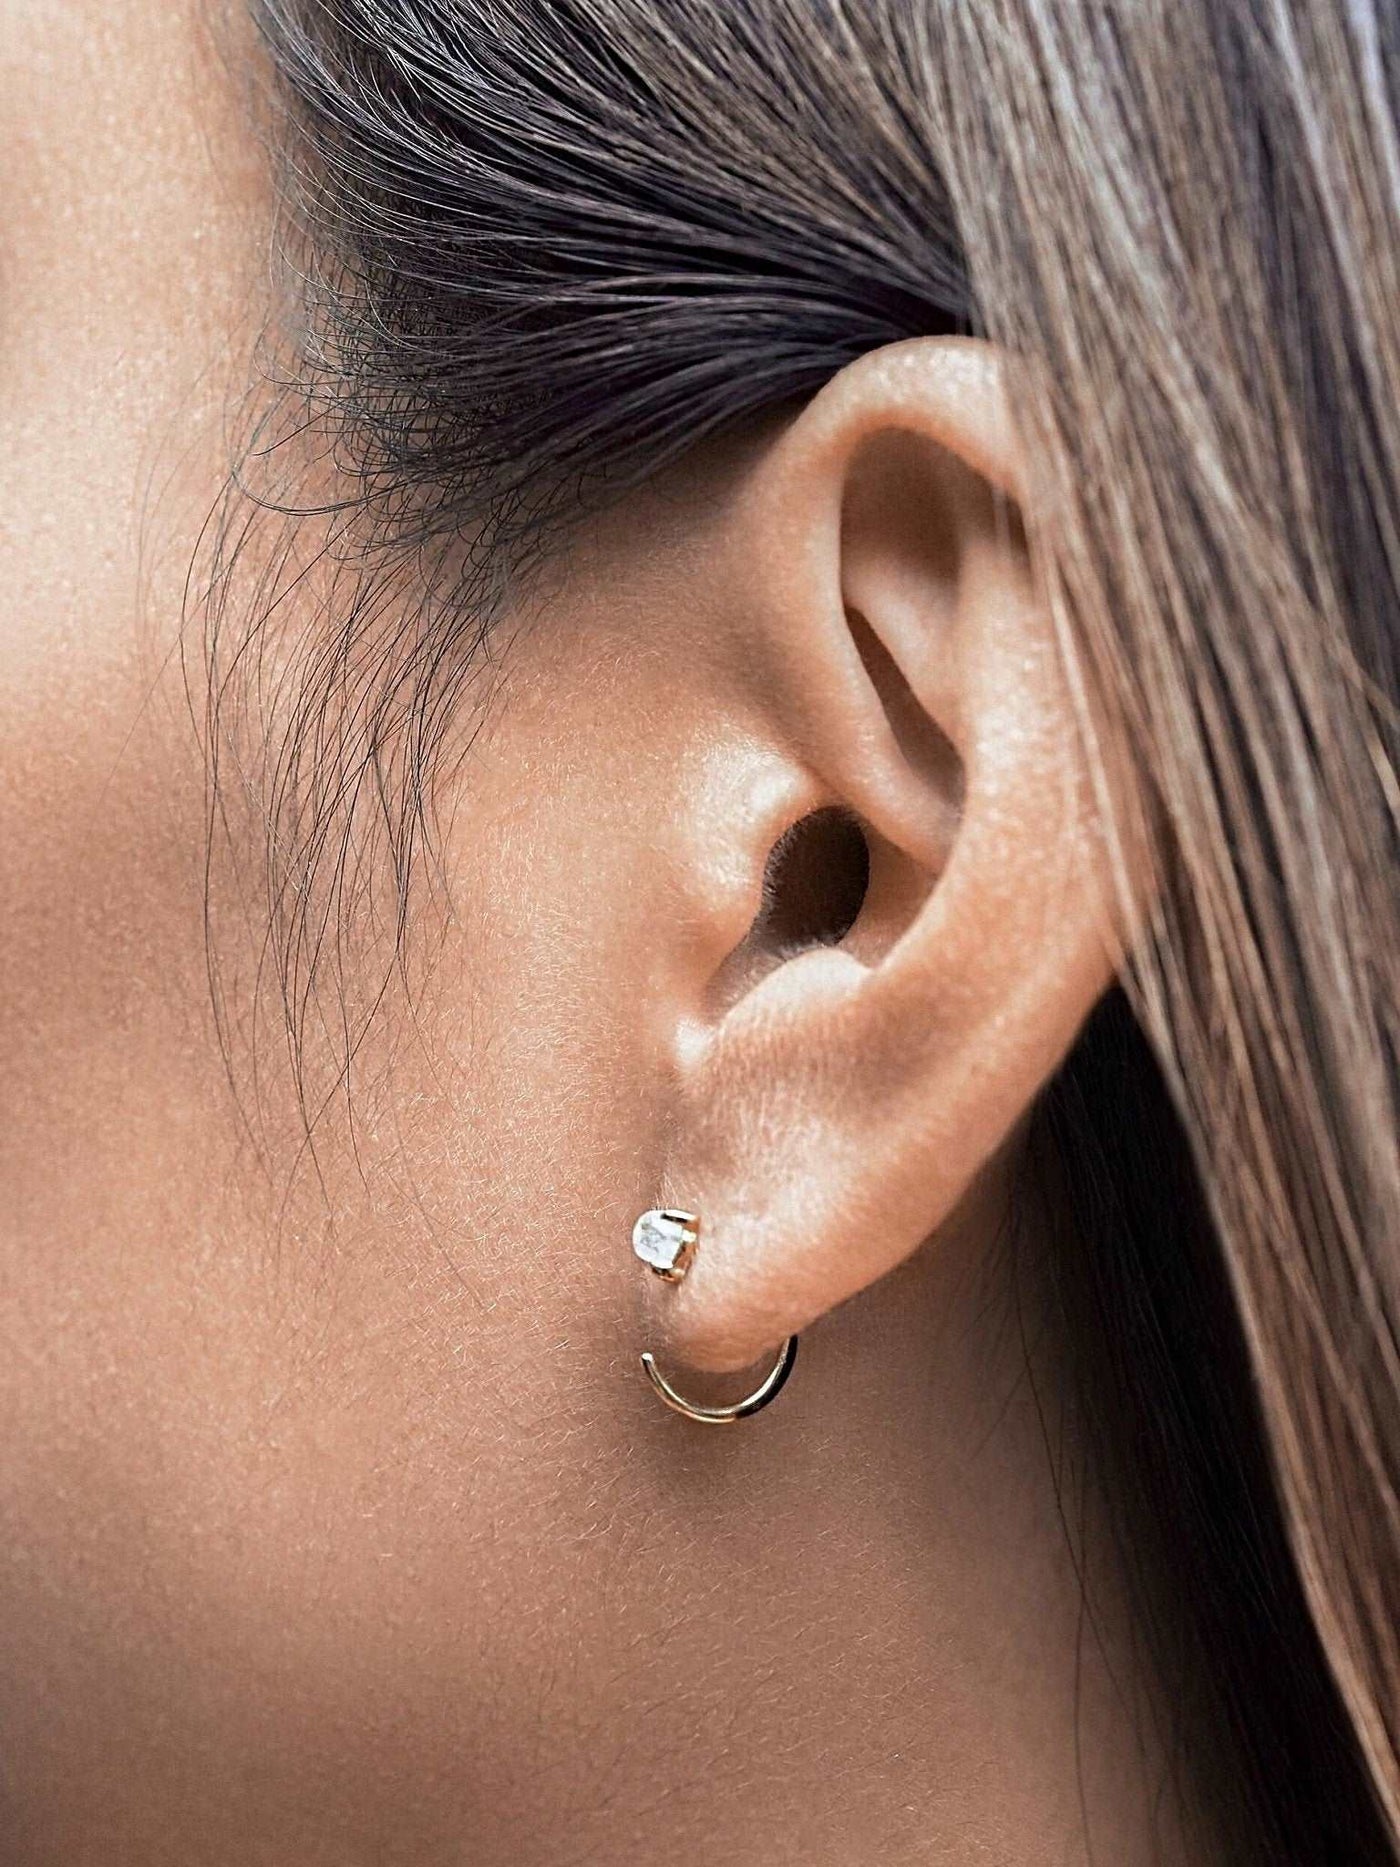 Candace Hoop Earrings - 925 Sterling SilverLabradoriteBackUpItemsBest Friend GiftLunai Jewelry